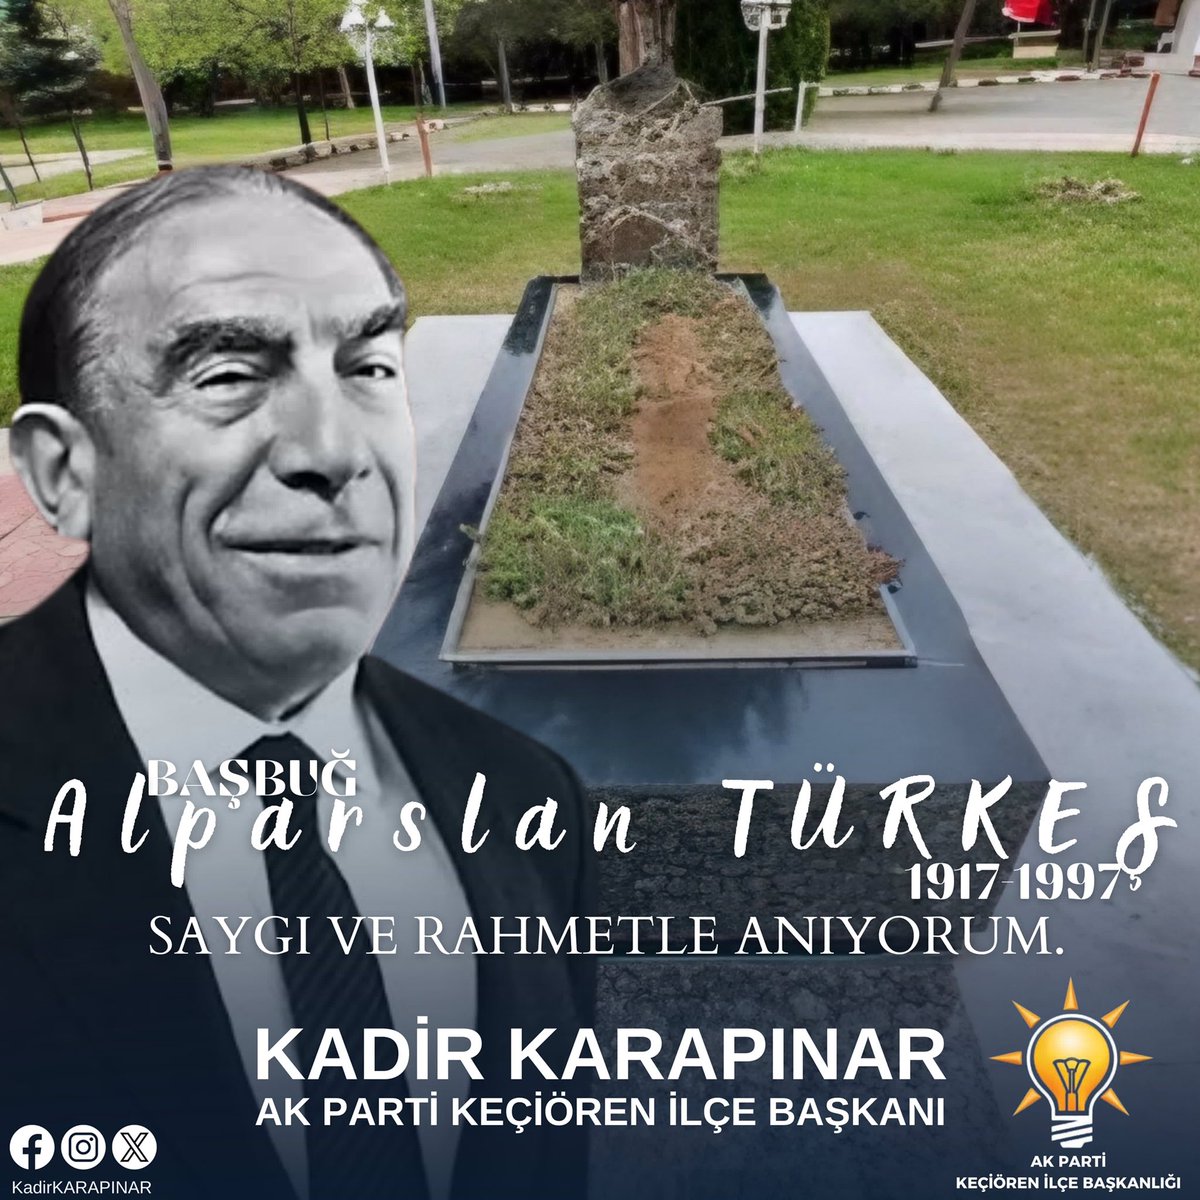 Milliyetçi Hareket Partisi’nin Kurucu Genel Başkanı, dava ve fikir adamı Alparslan Türkeş’i vefatının 27. yılında rahmetle ve saygıyla yad ediyorum. #AlparslanTürkeş @RTErdogan @hakanhanozcan @AkpartiAnkara @AKadirkarapinar